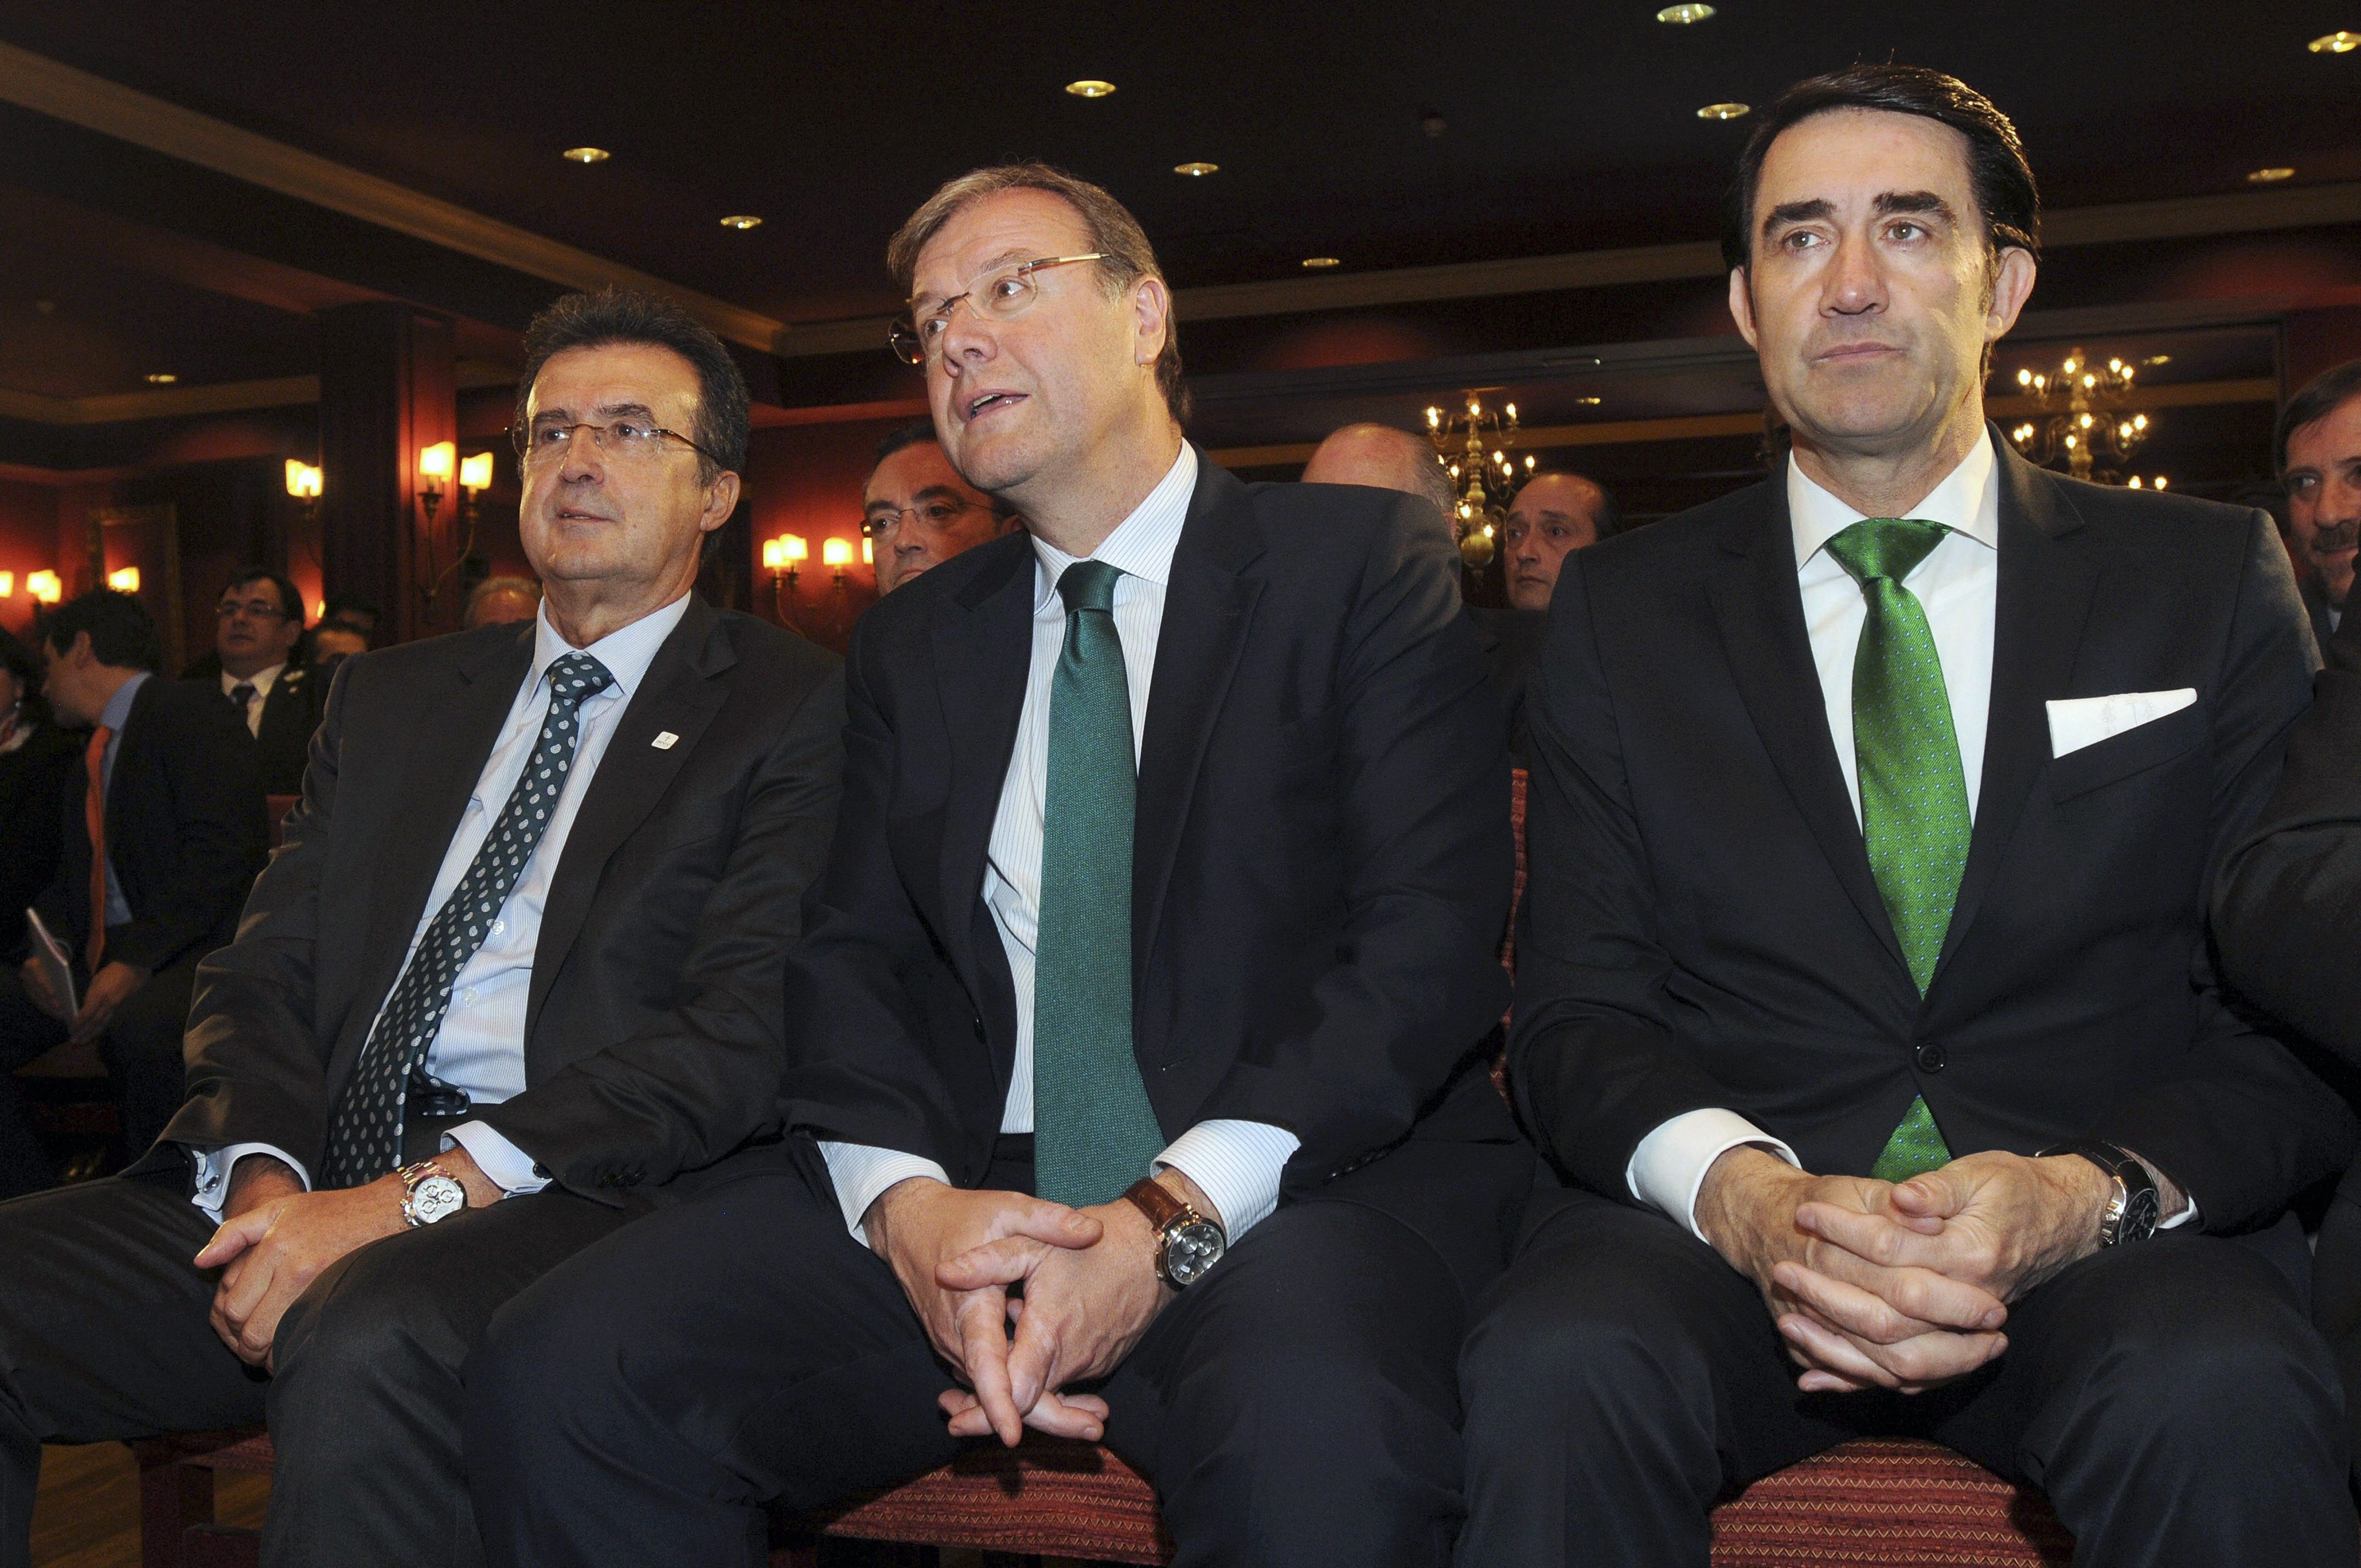 El alcalde de León, en el centro, junto a Ulibarri y el consejero Juan Carlos Suárez-Quiñones, también salpicado por el caso Enredadera